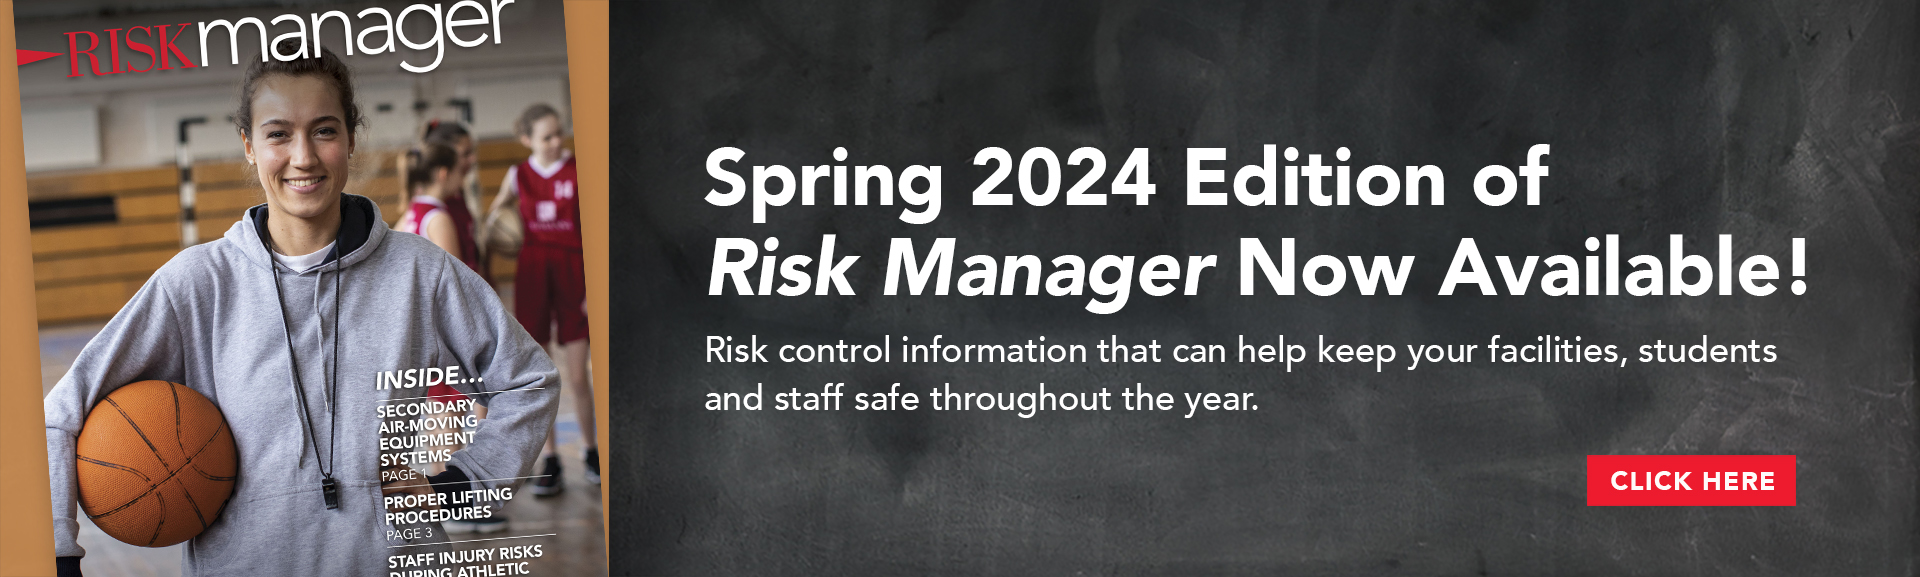 Risk Manager Spring 2024 Banner